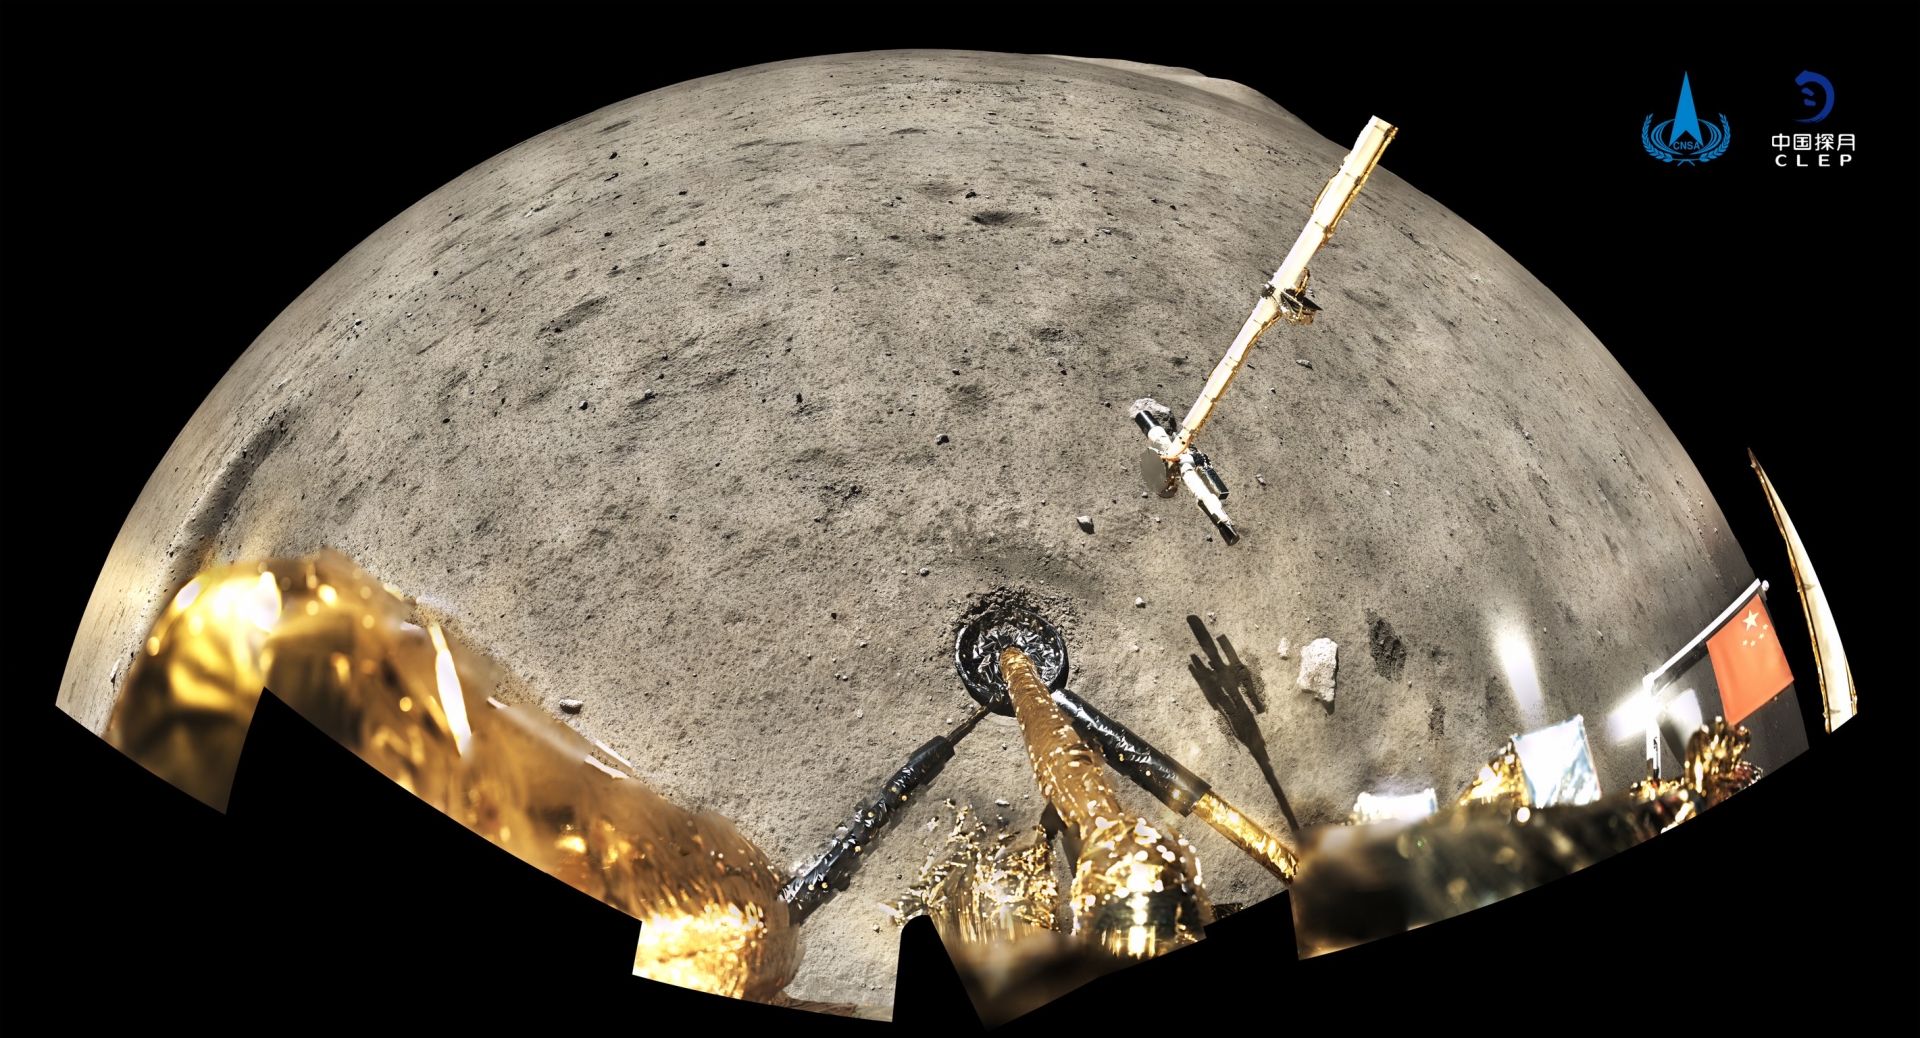 Снимка от кацането на "Чанъе-5" на Луната